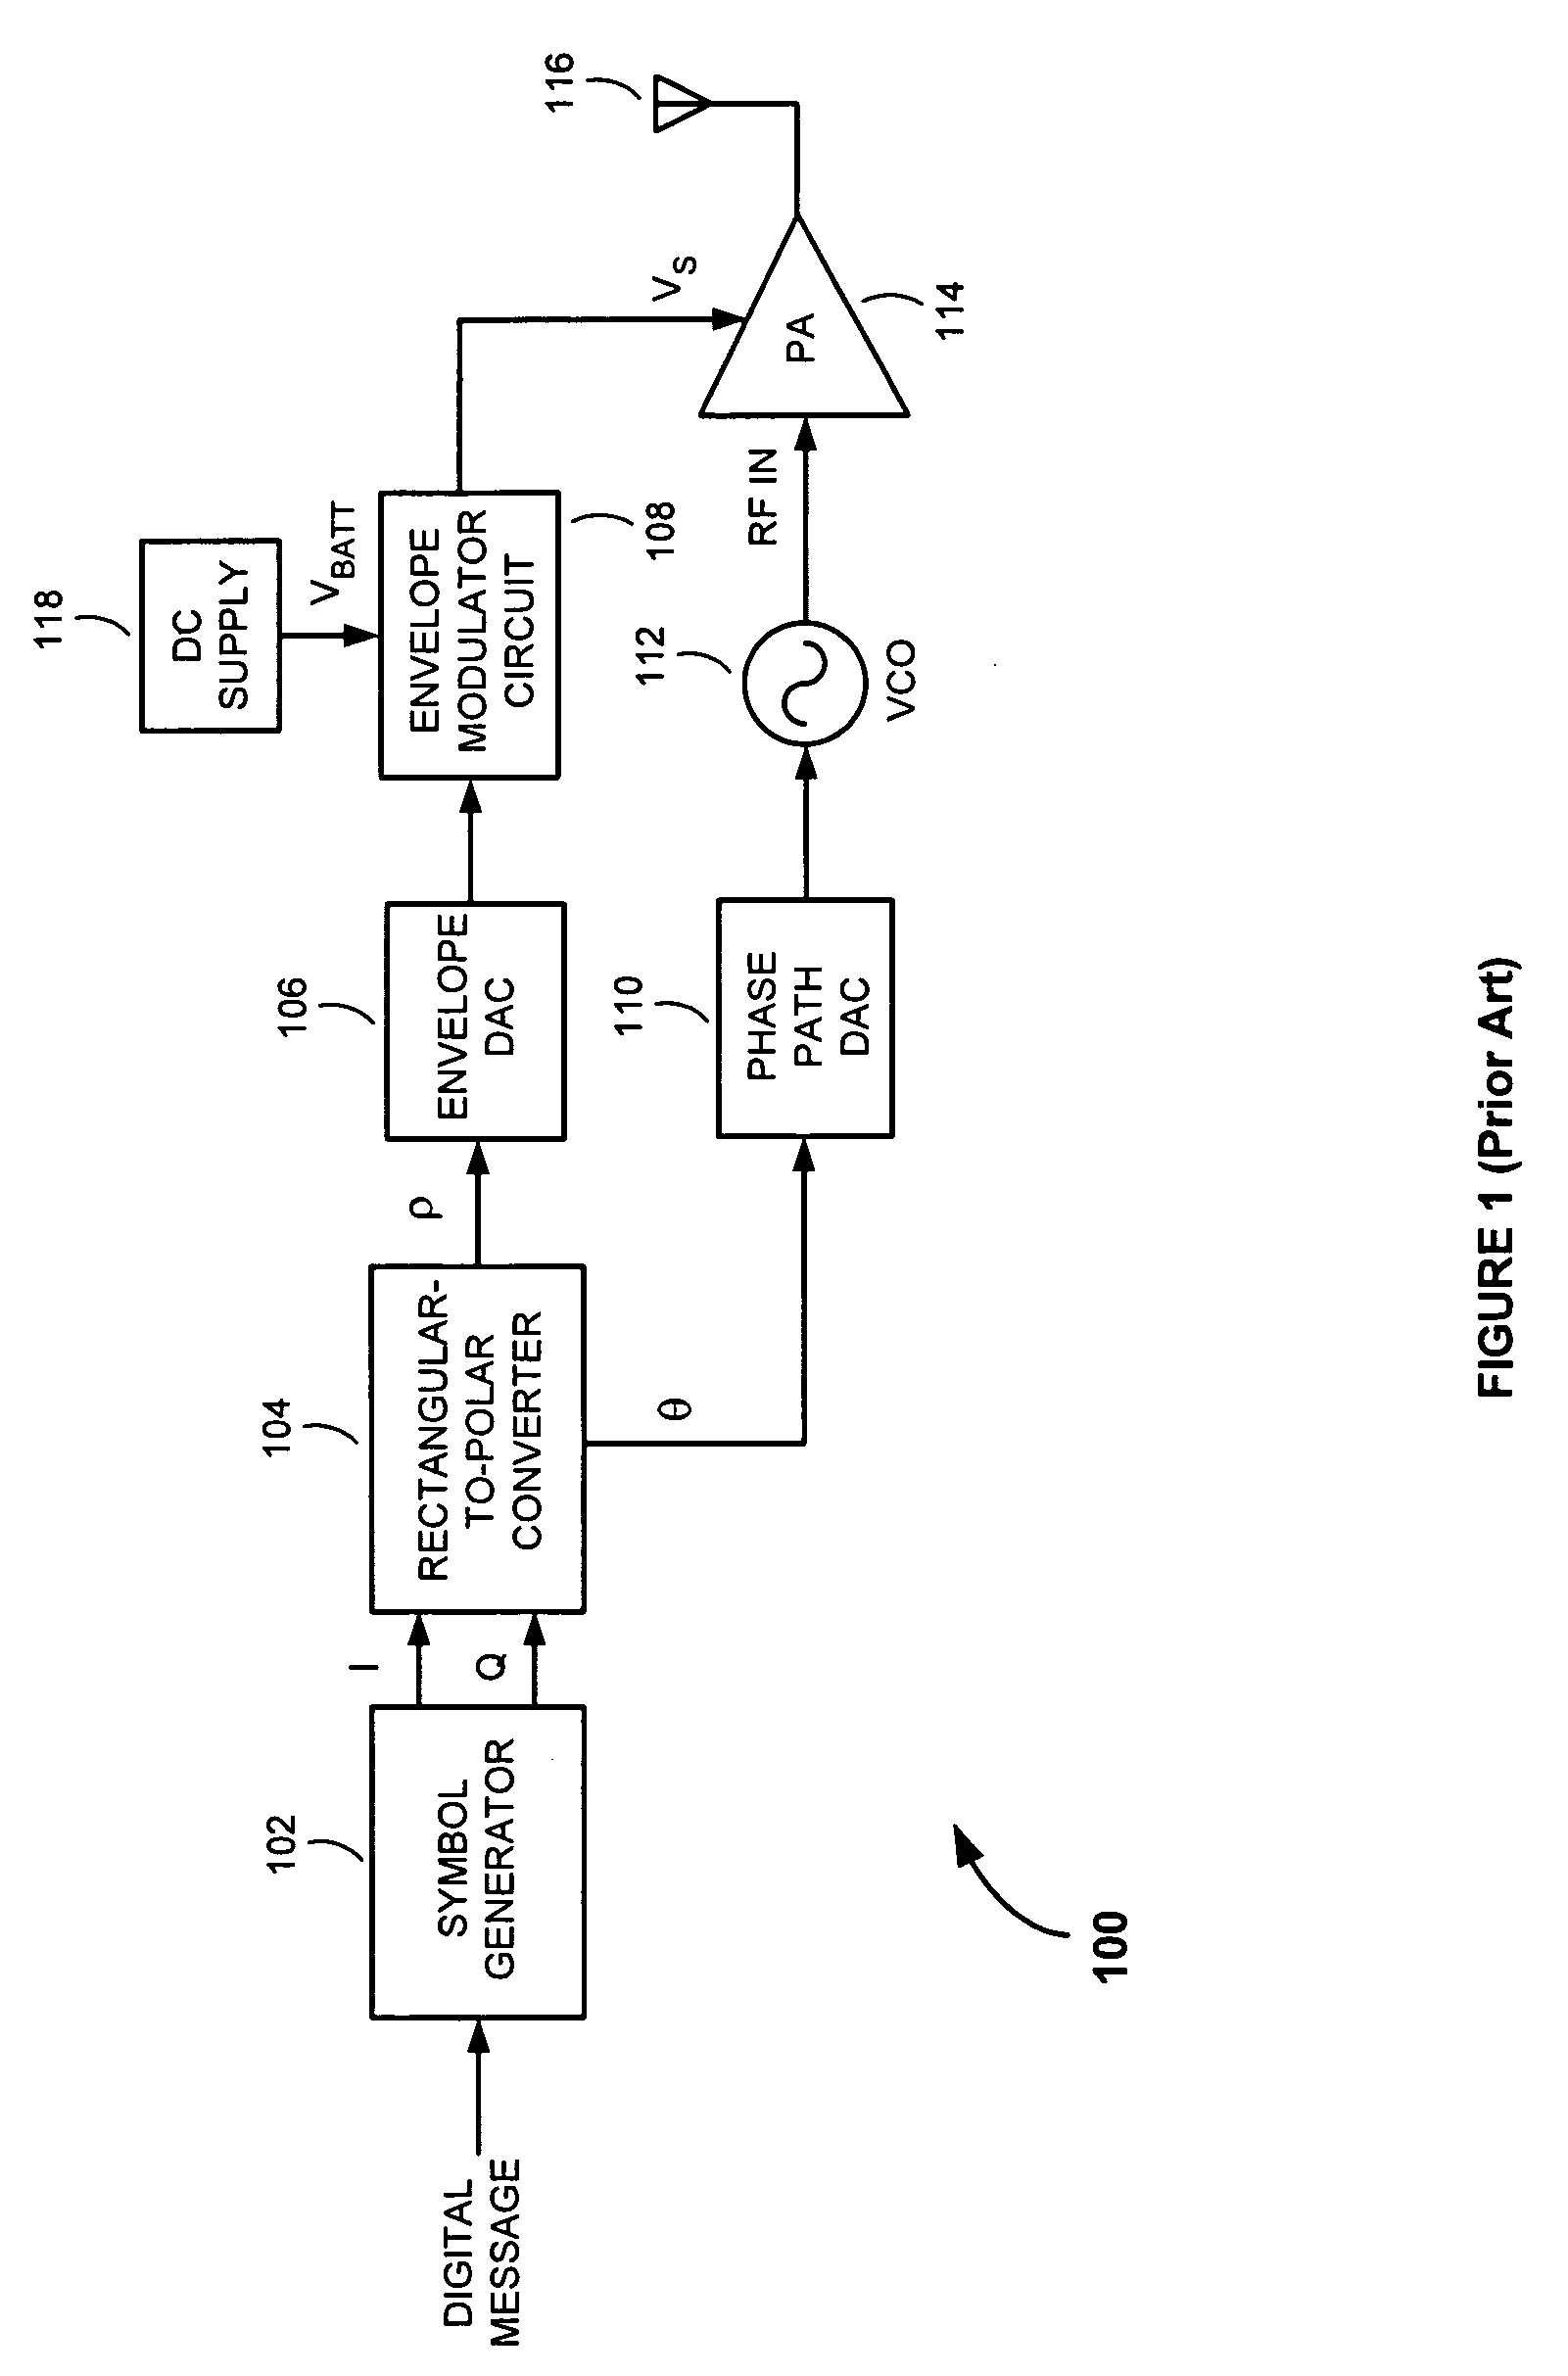 Polar modulation transmitter with envelope modulator path switching